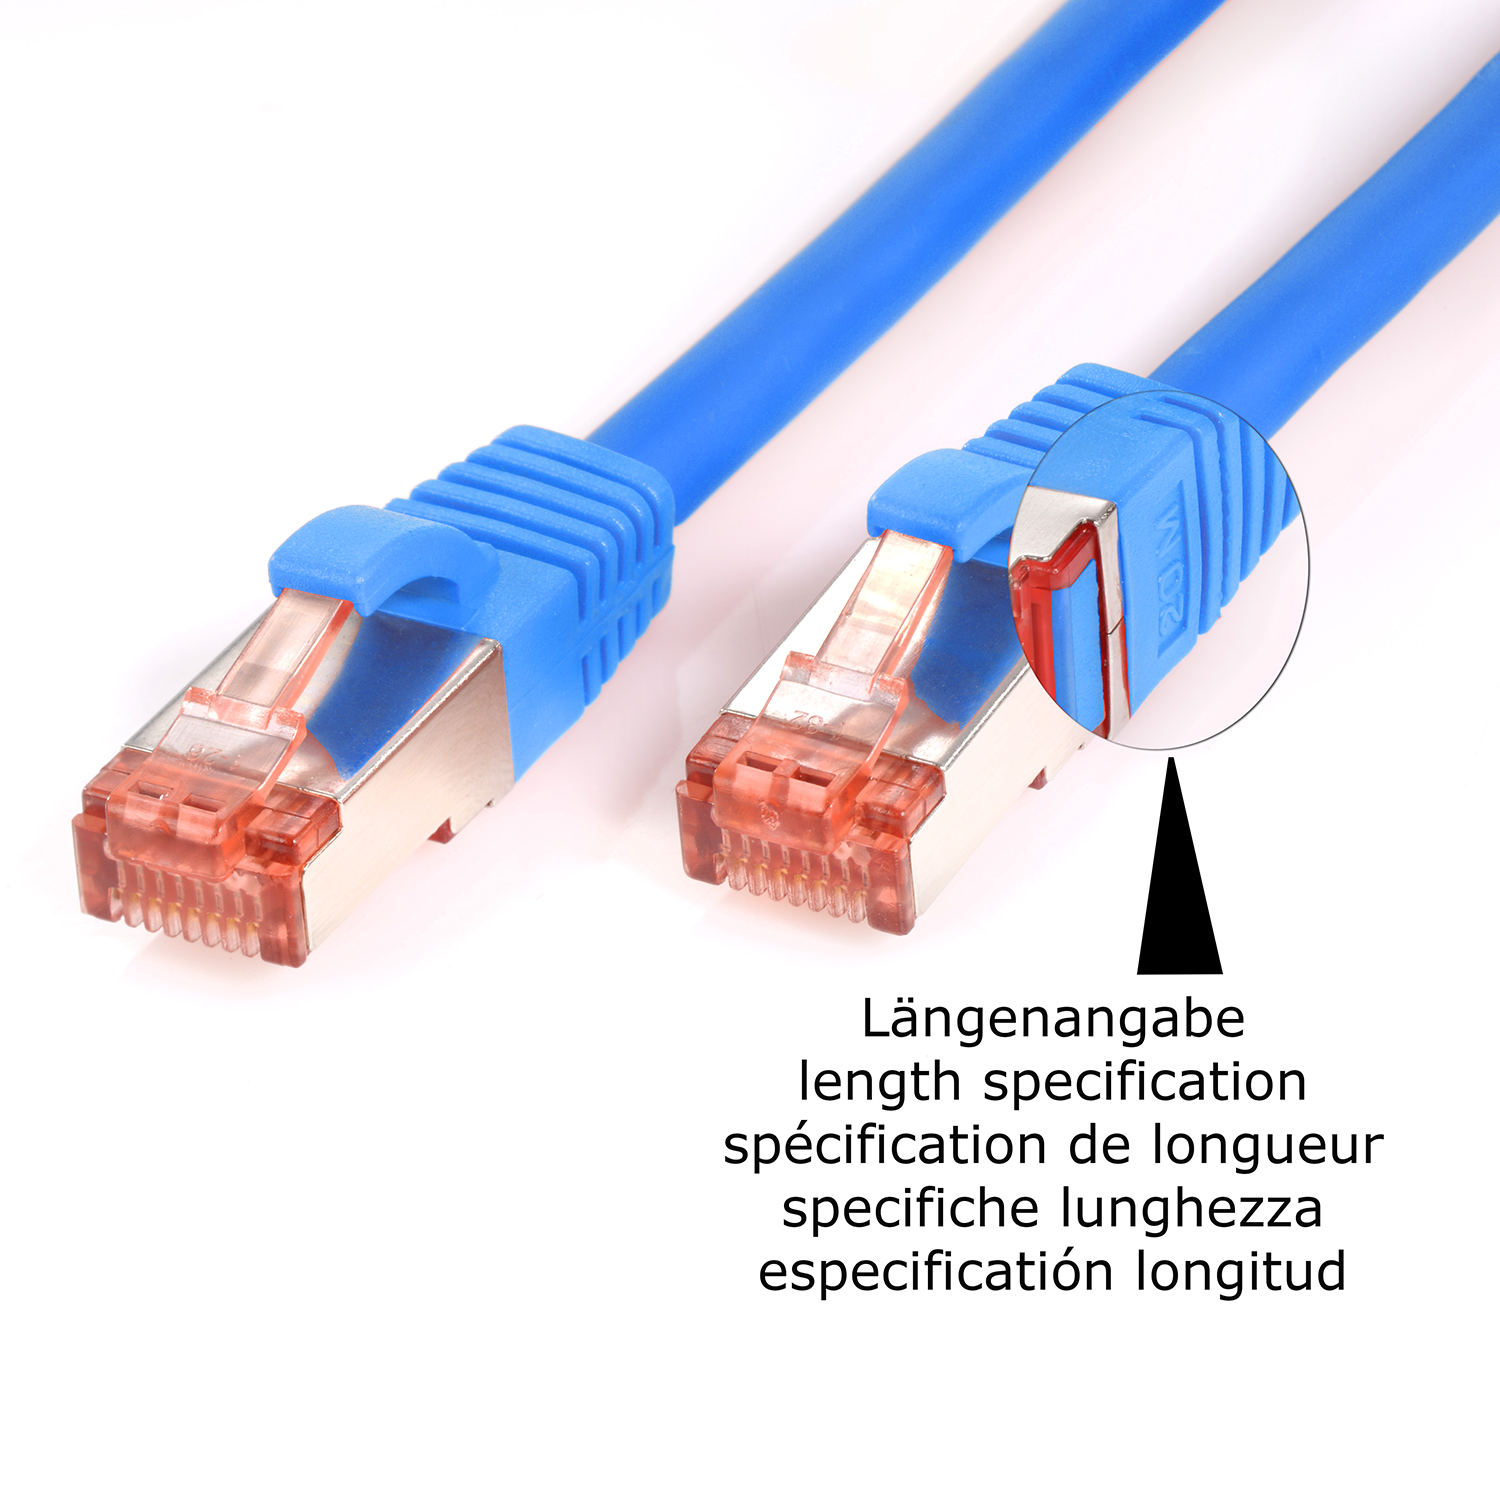 1,5m TPFNET Pack Netzwerkkabel, / m blau, Netzwerkkabel 1000Mbit, Patchkabel S/FTP 10er 1,5